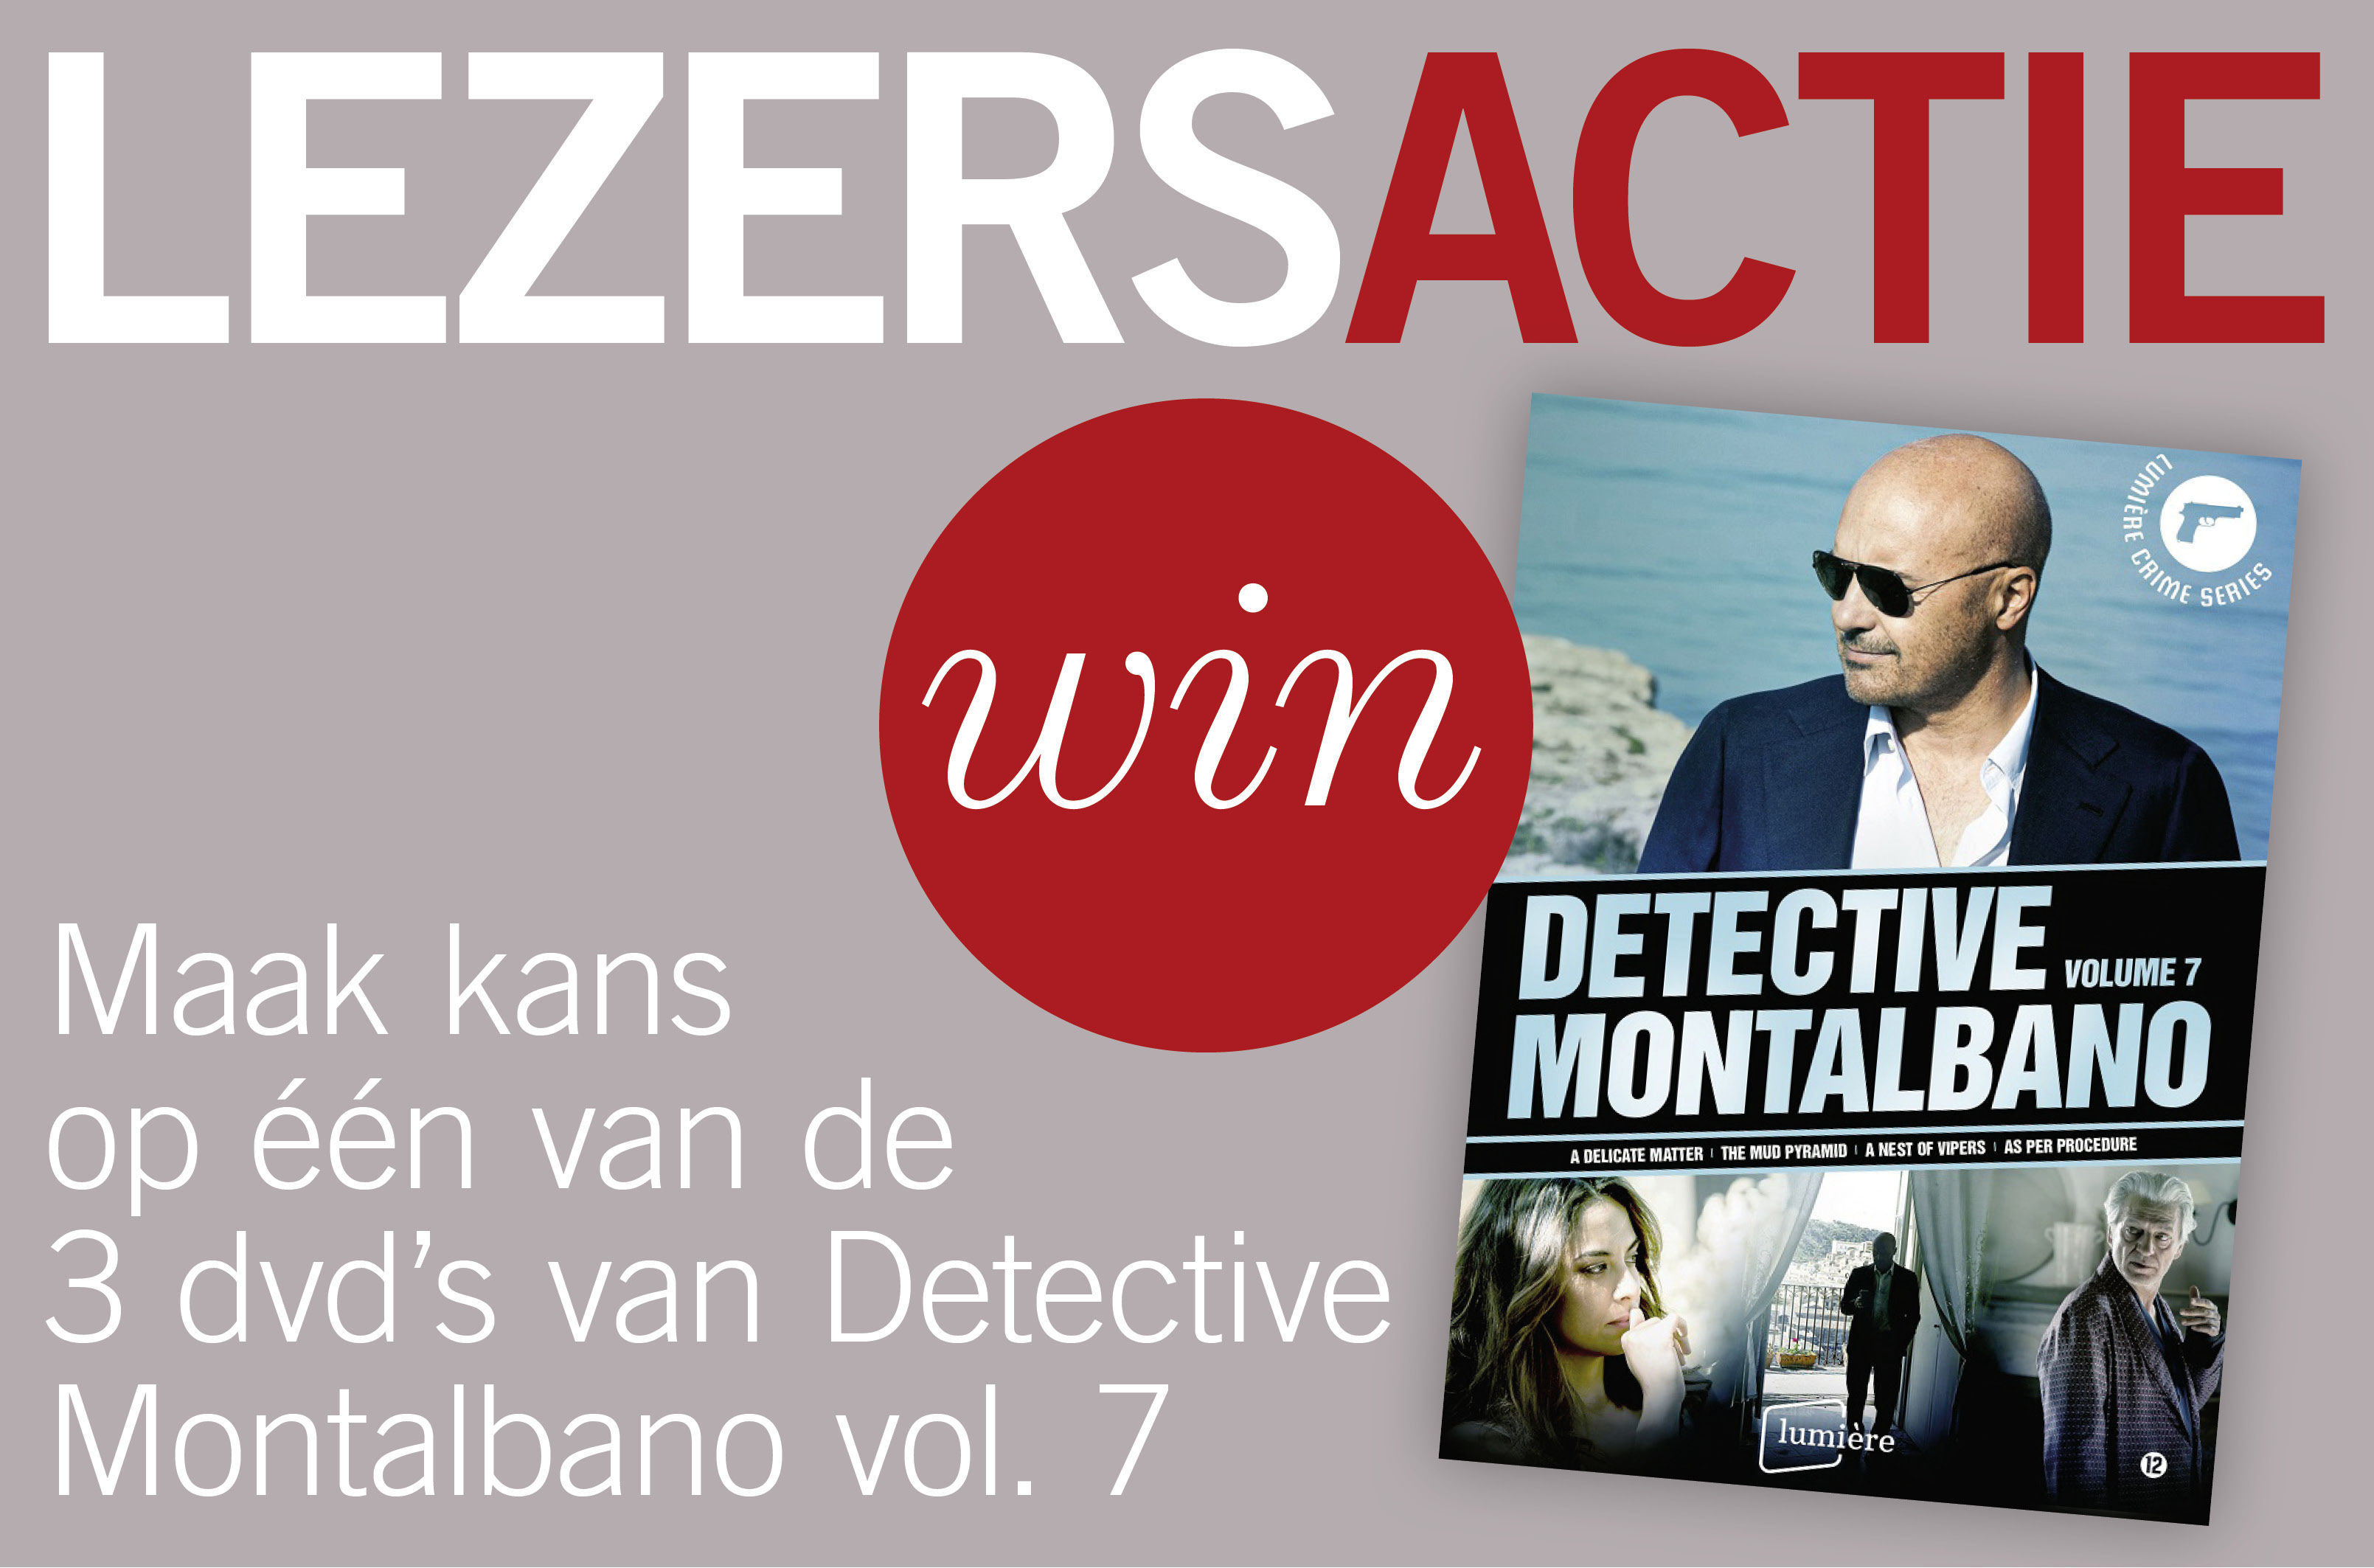 Maak kans op één van de 3 dvd's van Detective Montalbano volume 7.